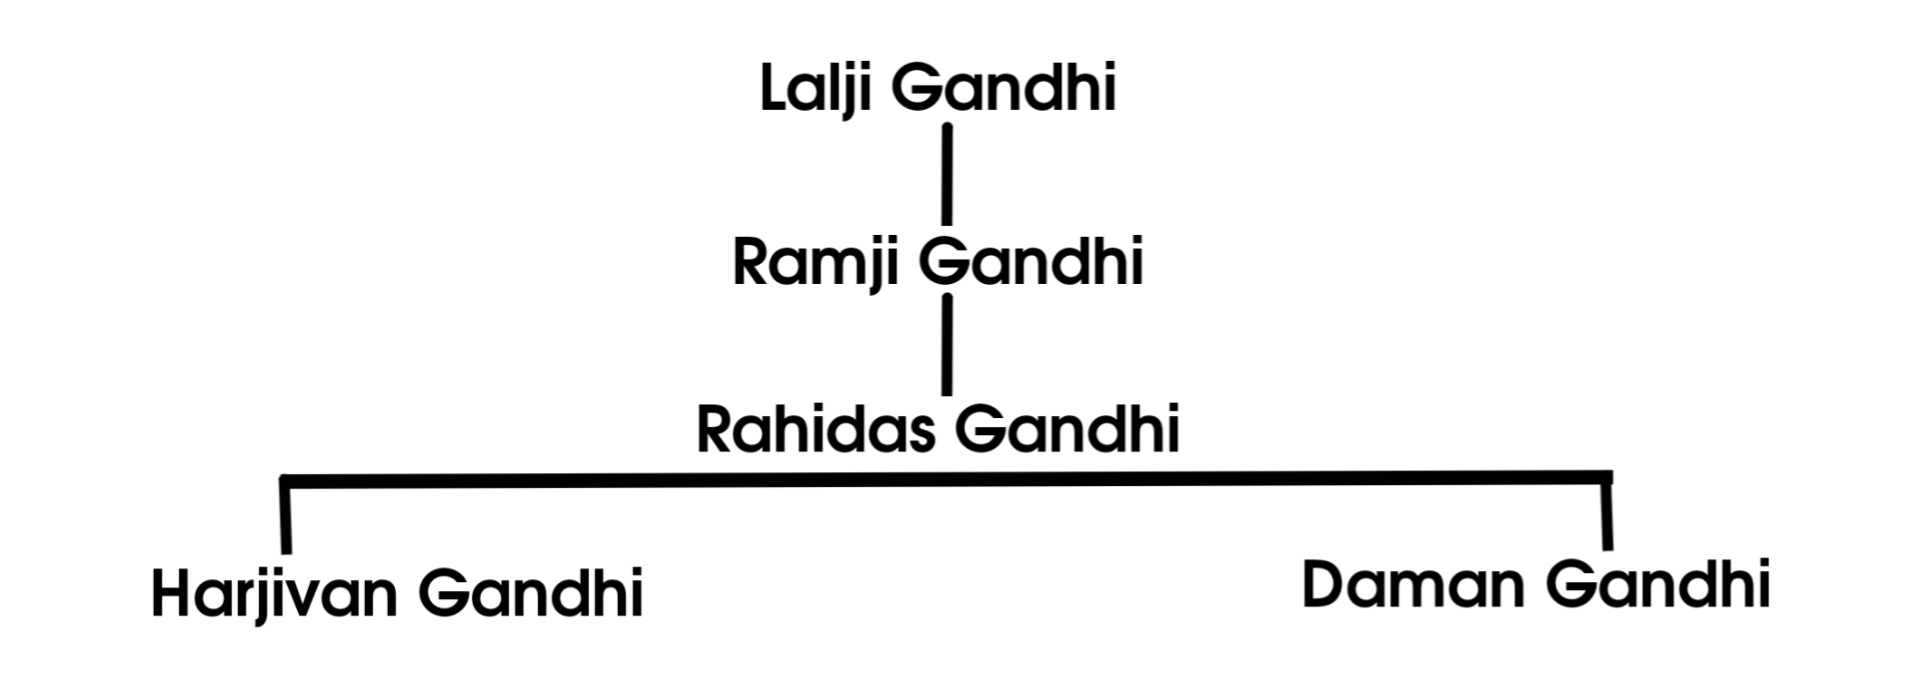 Mahatma Gandhi Family tree